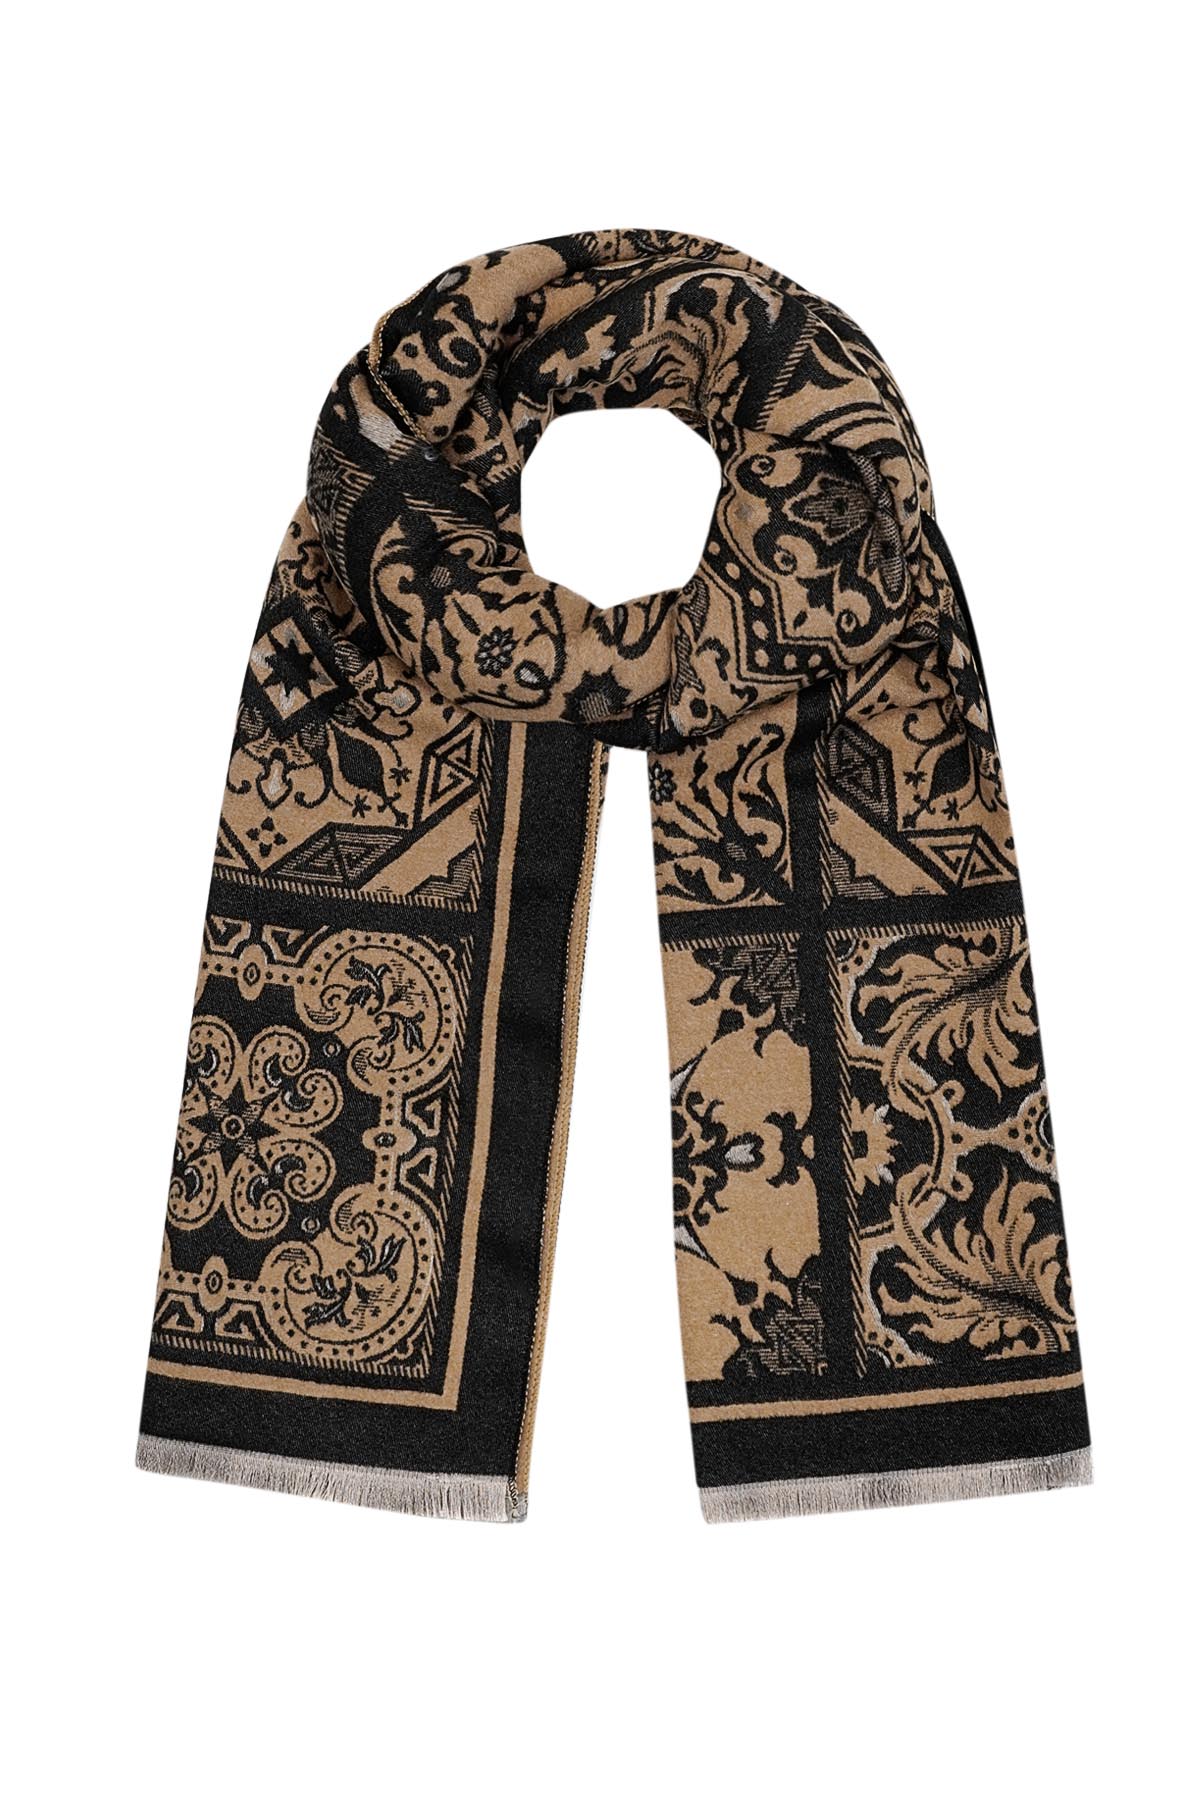 Sjaal met retro print - bruin zwart h5 